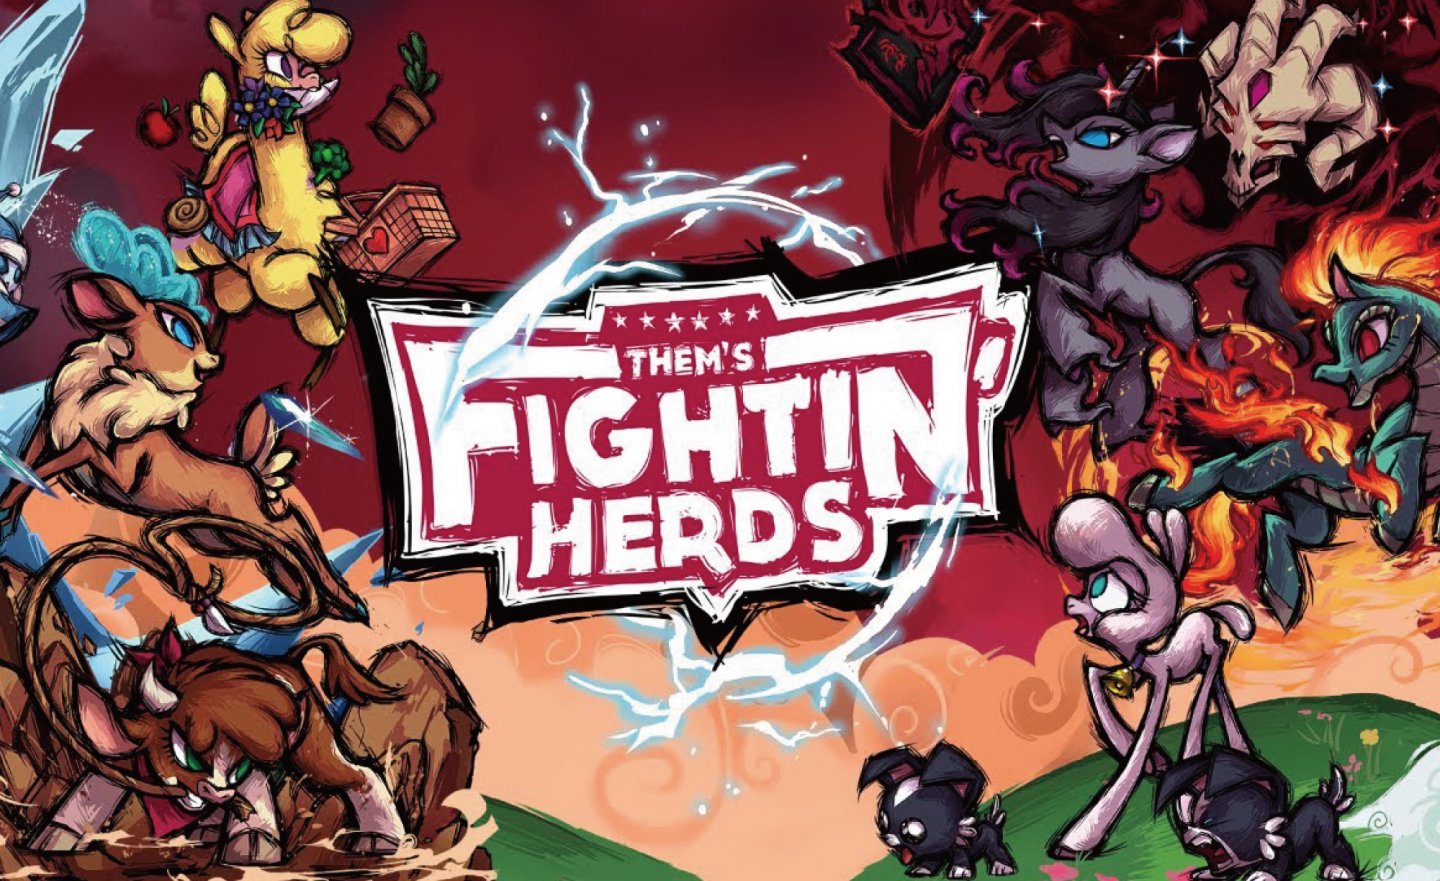 【限時免費】《彩虹小馬》製作人製作的動物格鬥遊戲《Them’s Fightin’ Herds》，2022 年 12 月 21 日 00:00 截止